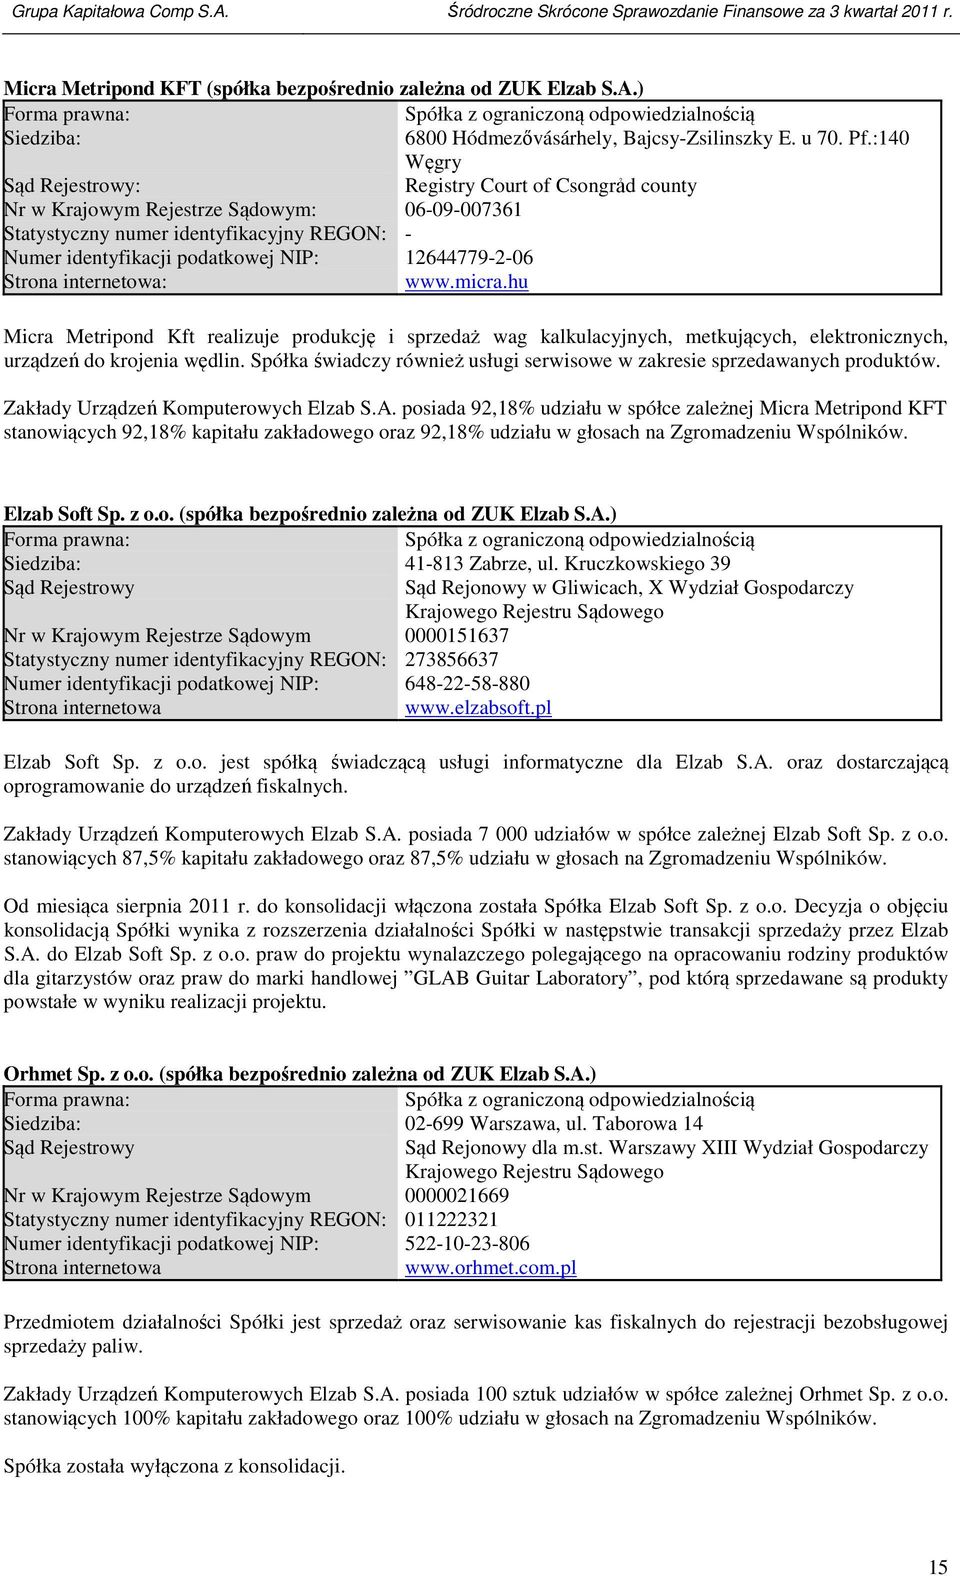 podatkowej NIP: 12644779-2-06 Strona internetowa: www.micra.hu 6800 Hódmezővásárhely, Bajcsy-Zsilinszky E. u 70. Pf.